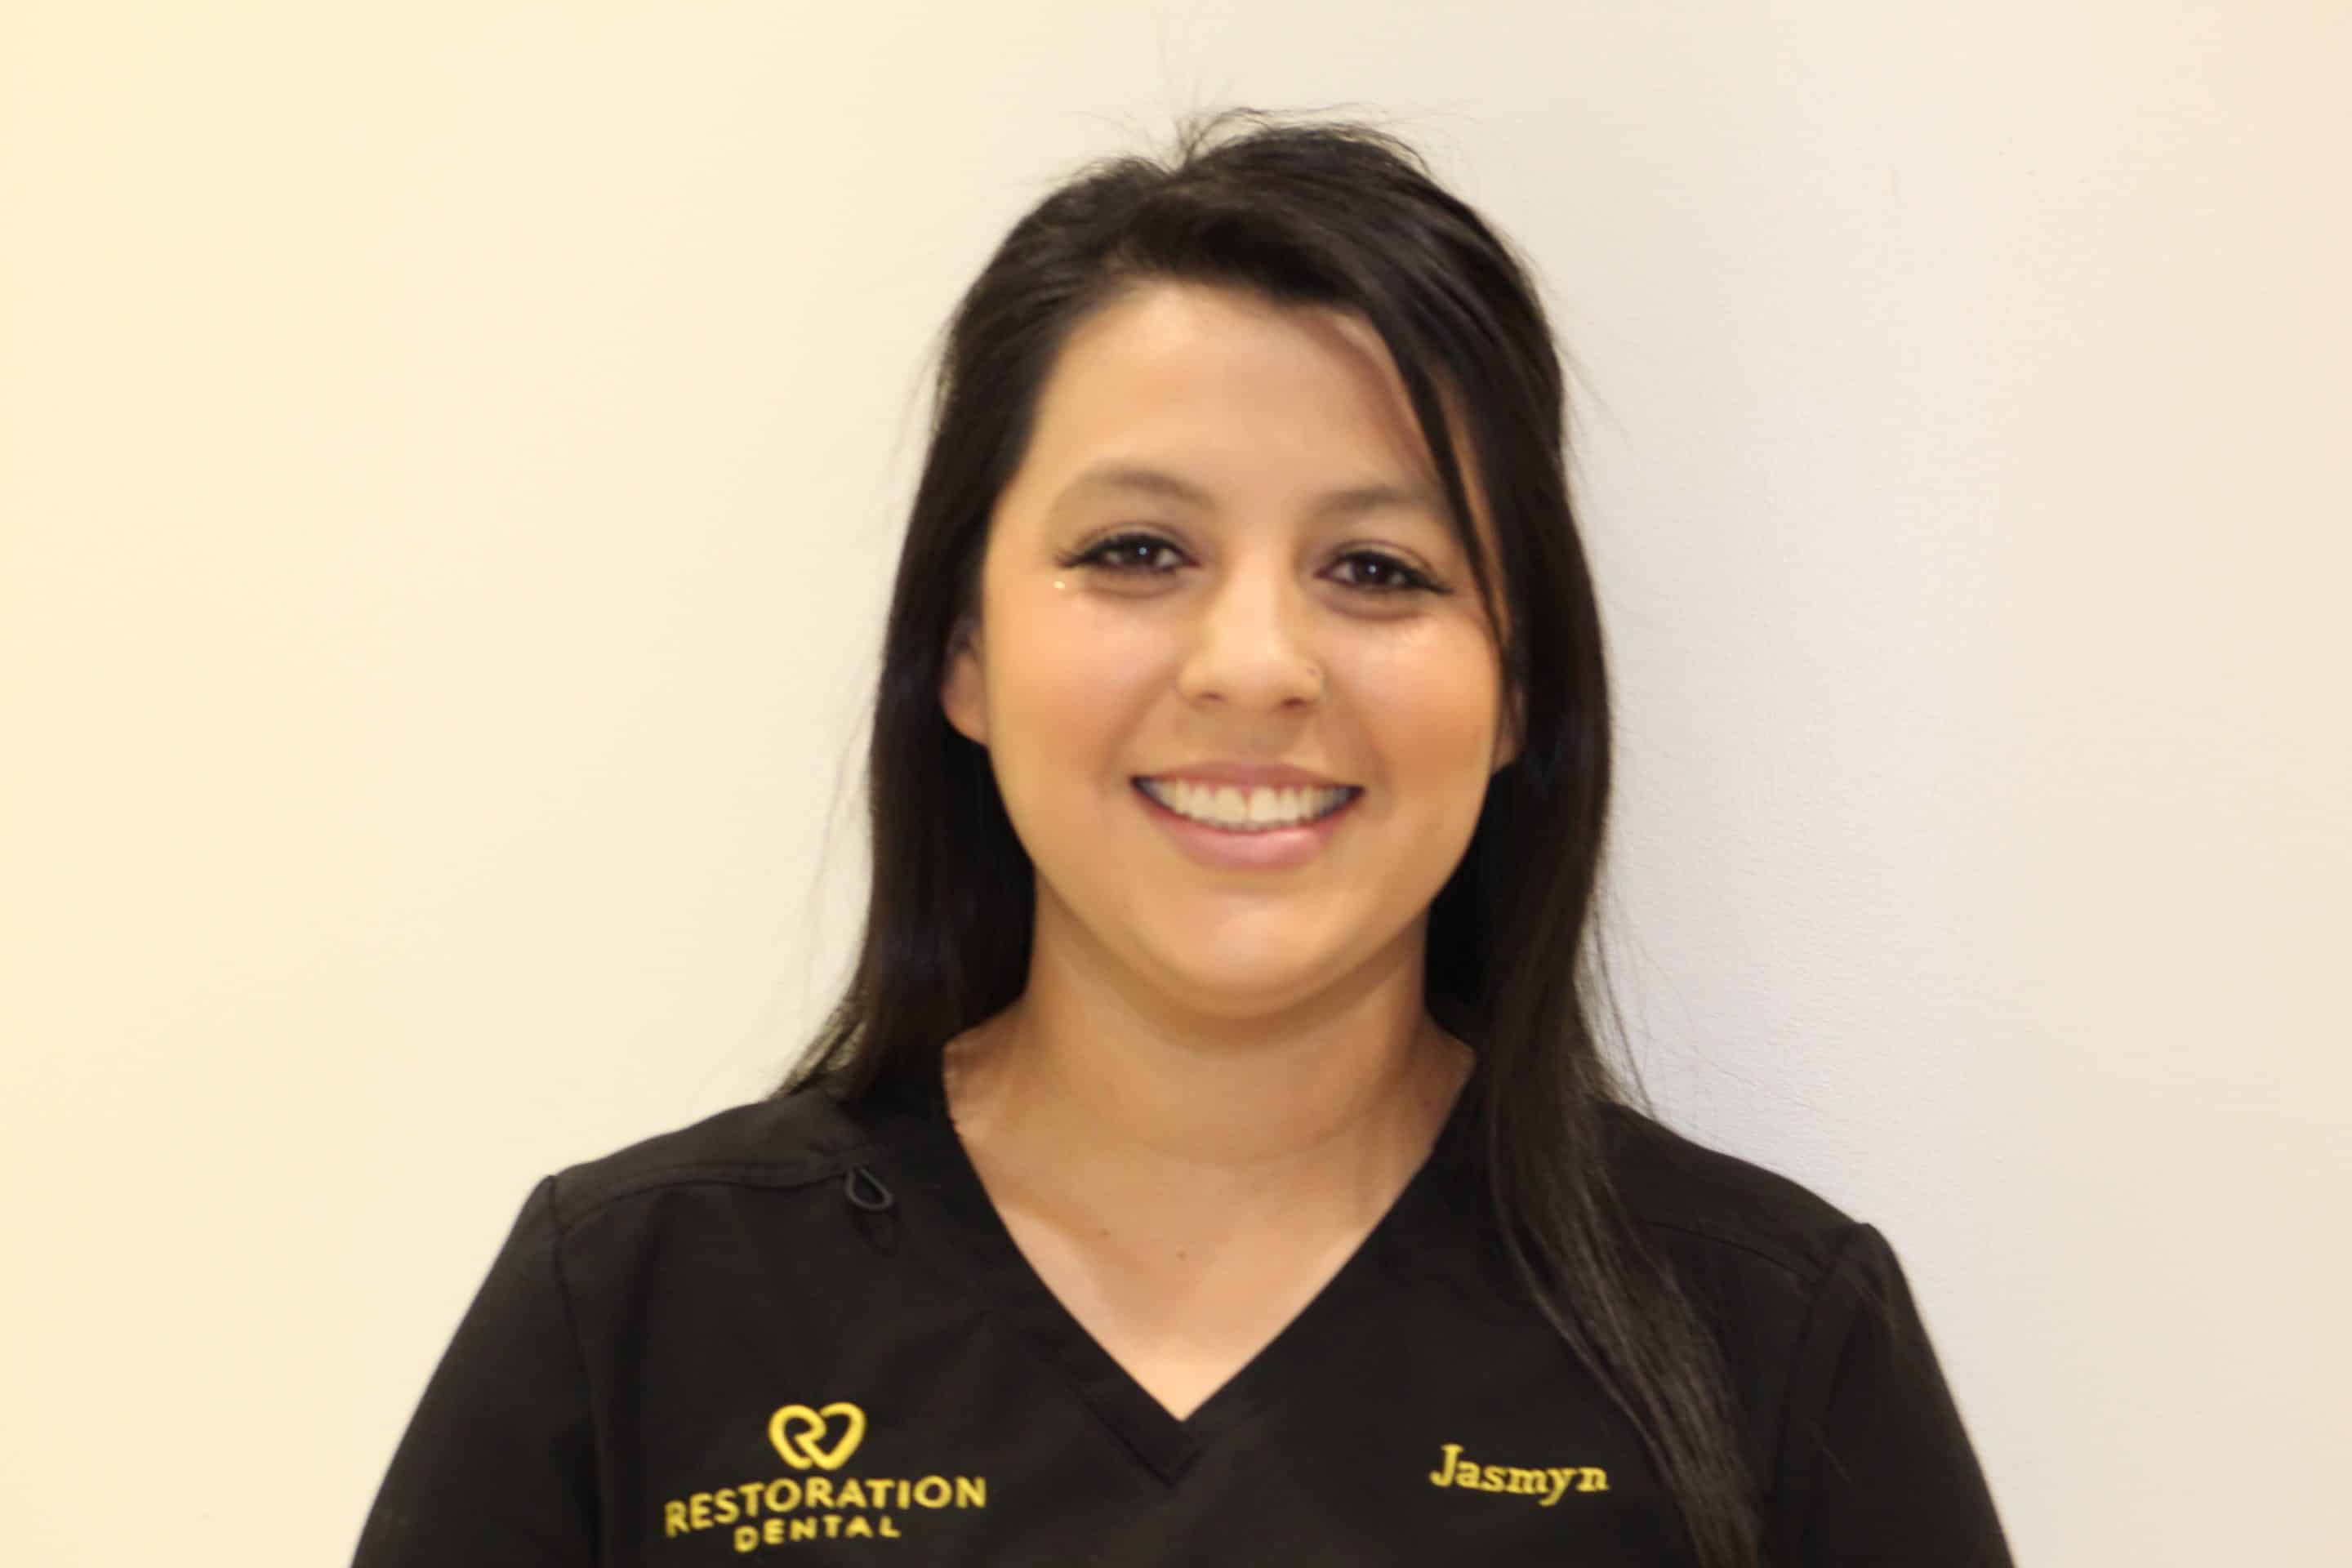 Jasmyn Rangel Dental Assistant at Restoration Dental in Mesa, AZ